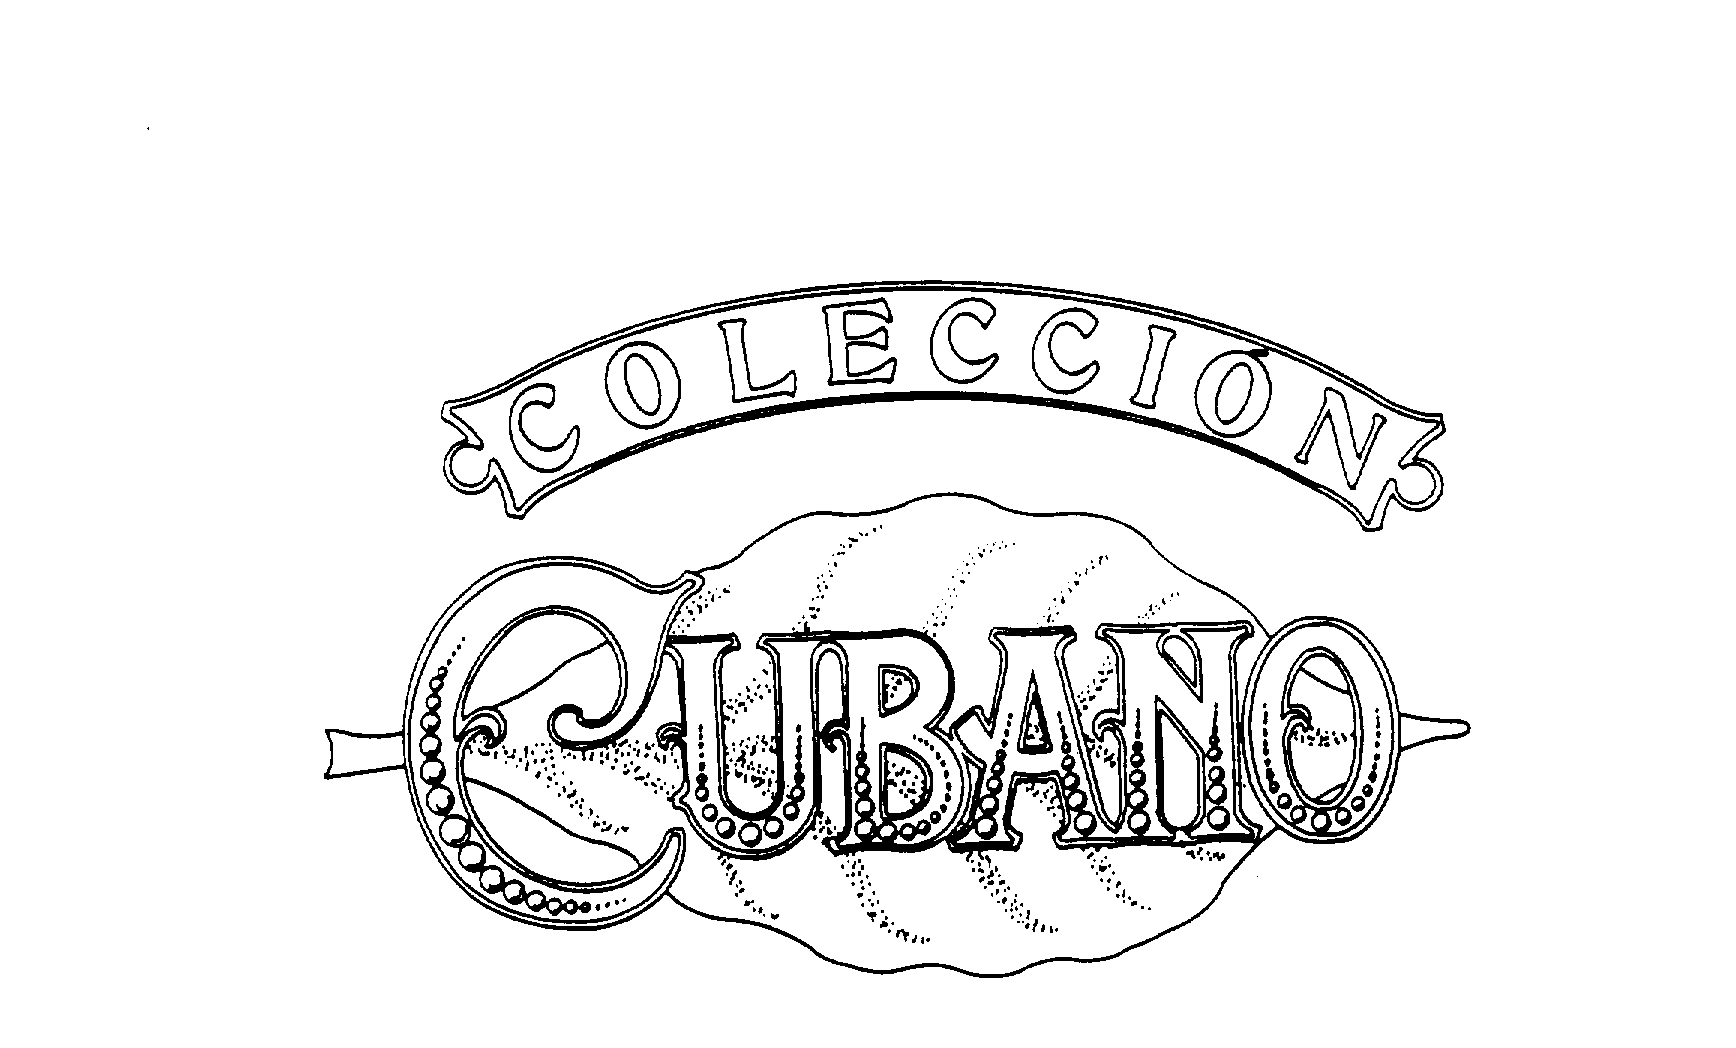  COLECCION CUBANO